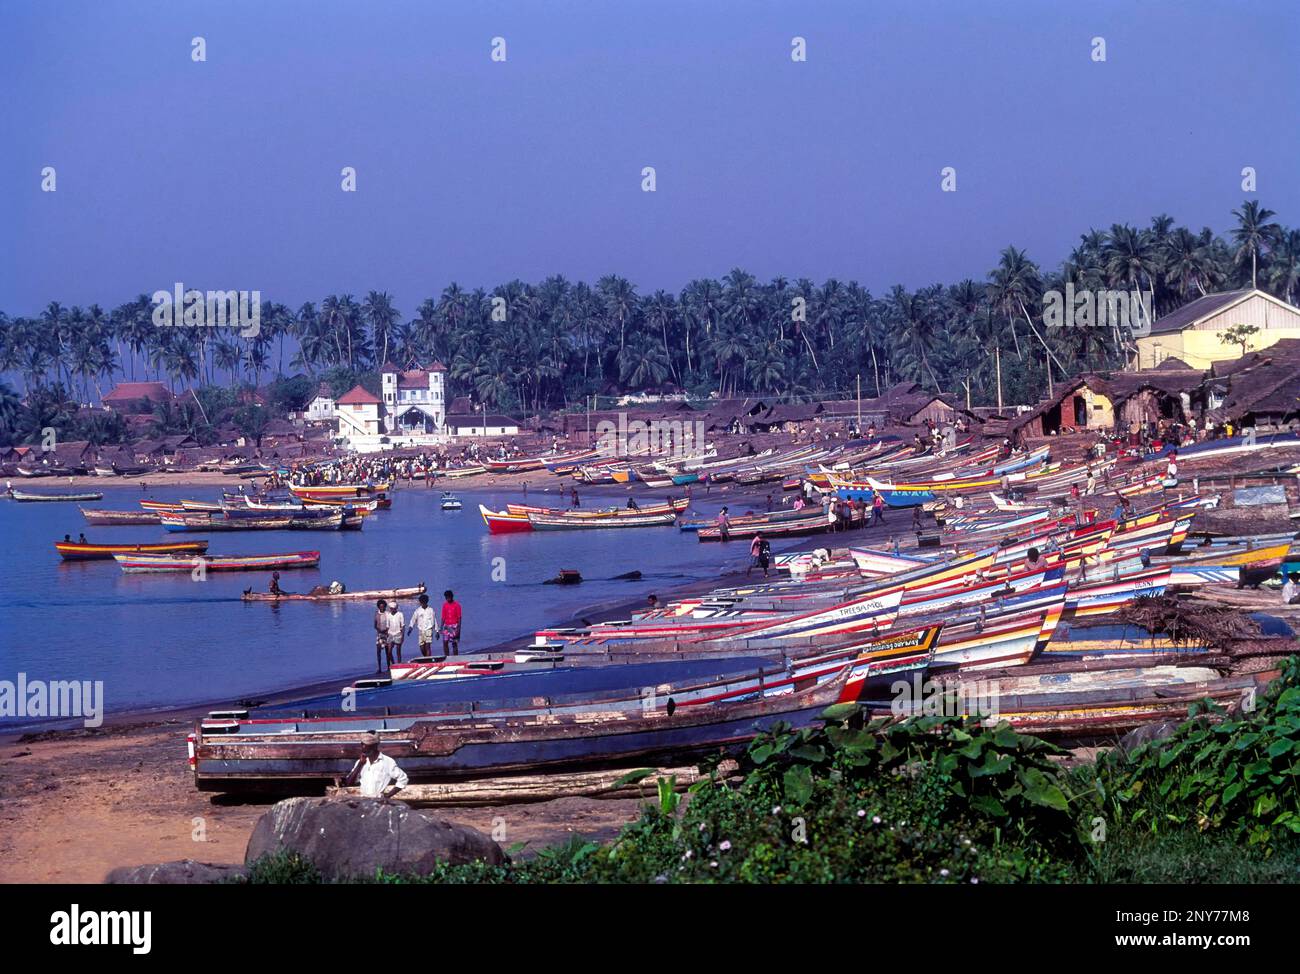 Vizhinjam, a fishing village near Thiruvananthapuram, Trivandrum, Kerala, India Stock Photo